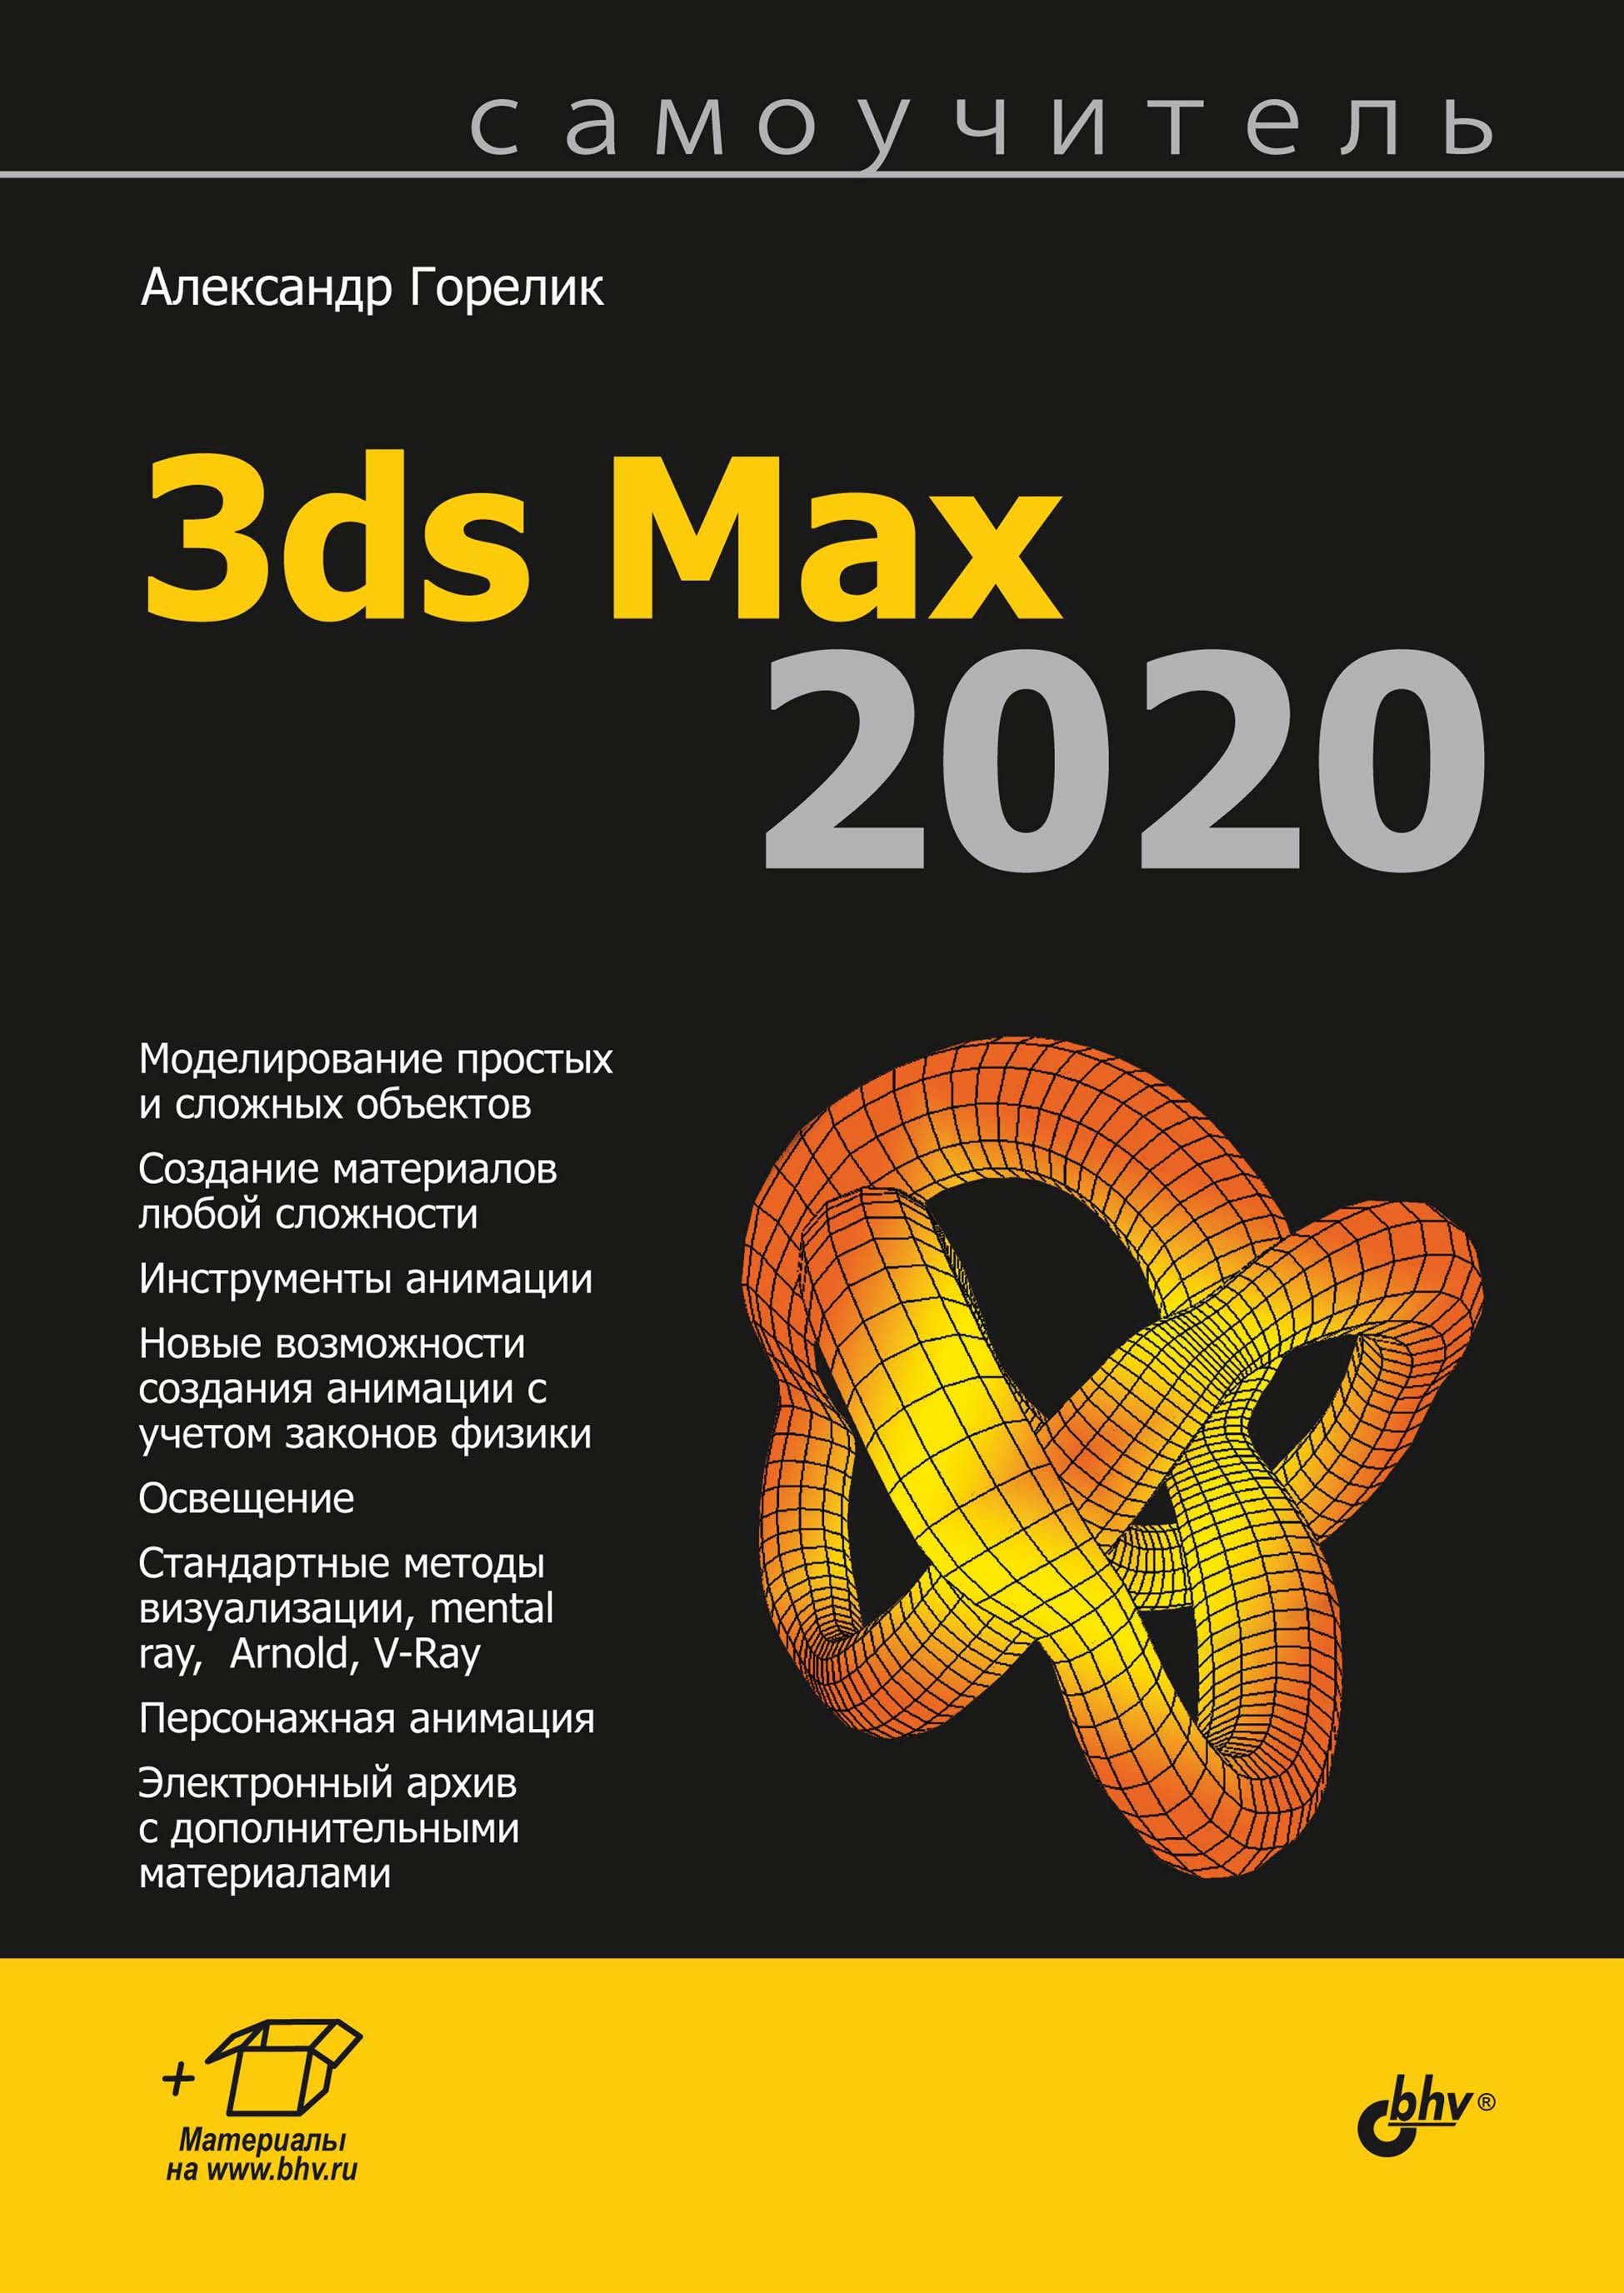 Книга Самоучитель (BHV) Самоучитель 3ds Max 2020 созданная Александр Горелик может относится к жанру дизайн, программы, самоучители. Стоимость электронной книги Самоучитель 3ds Max 2020 с идентификатором 66338158 составляет 449.00 руб.